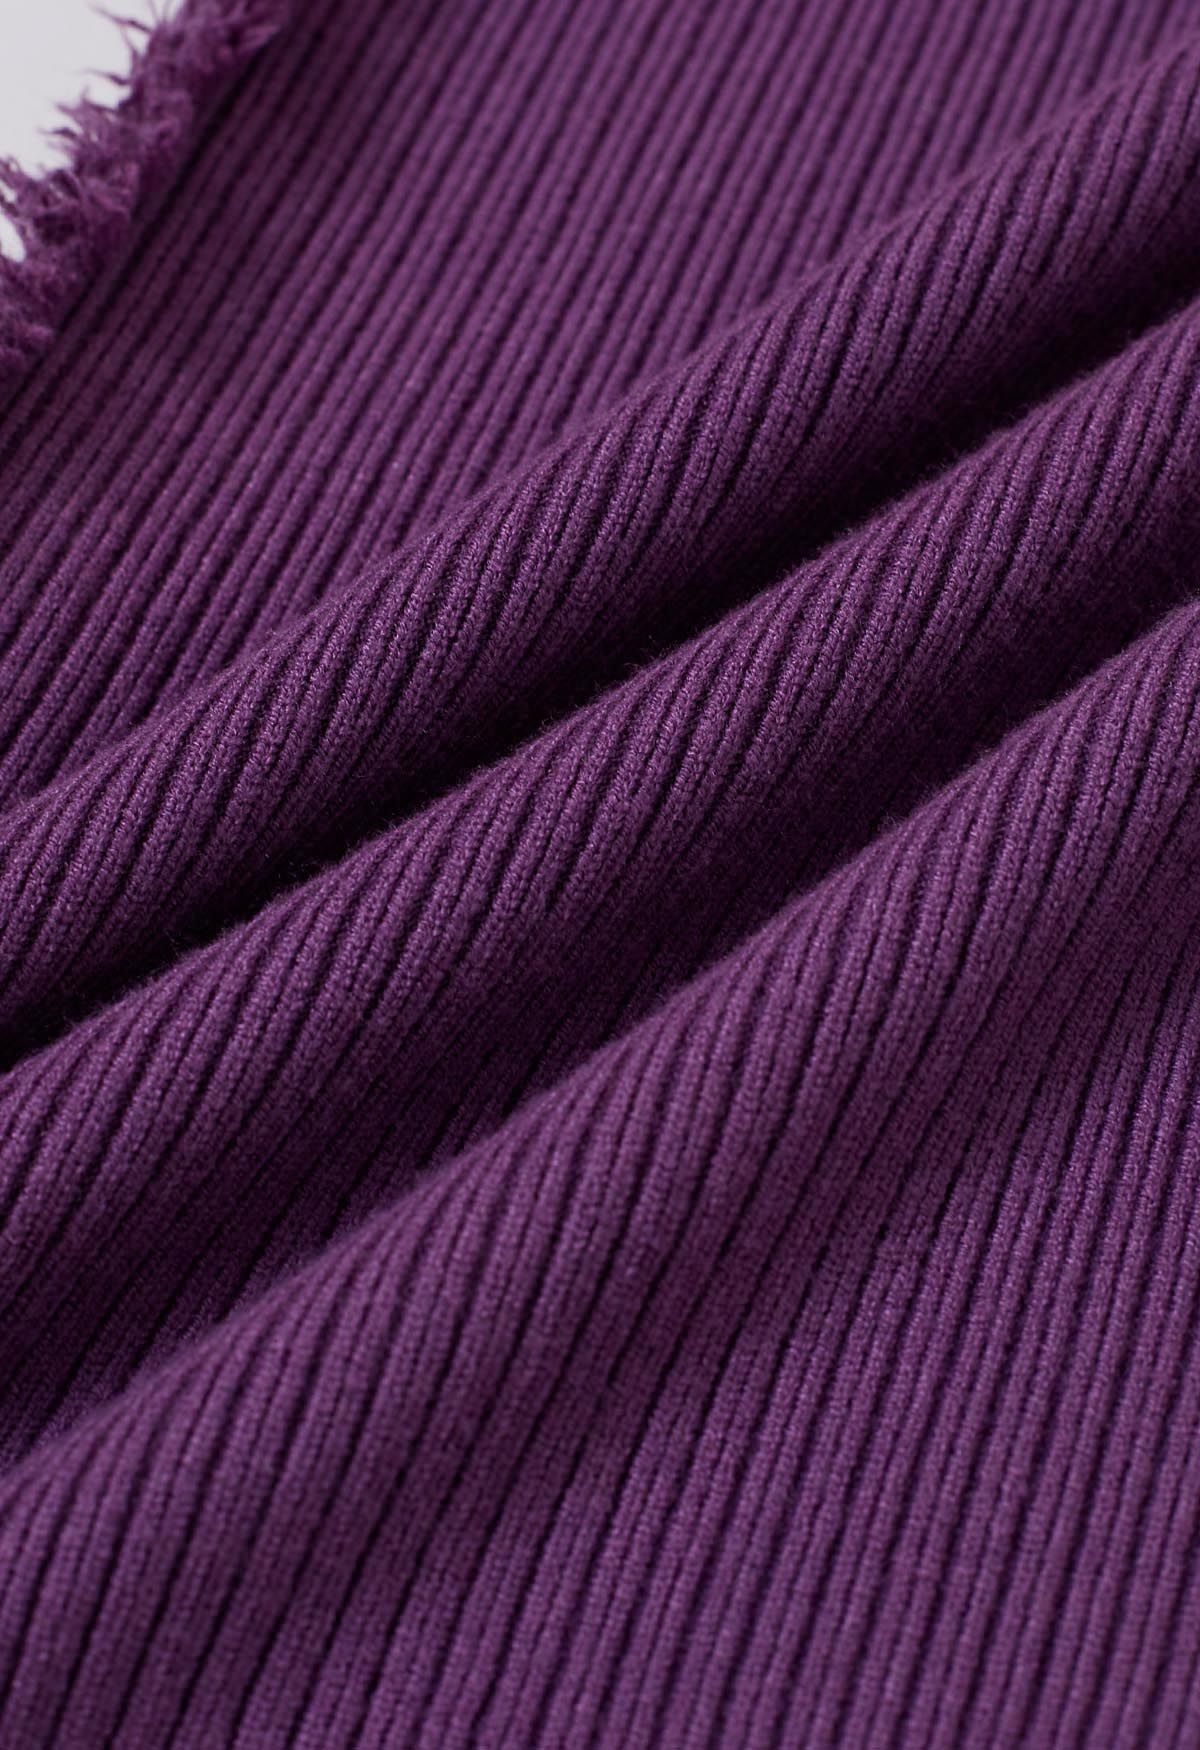 Side Tassel Trim Straight-Leg Knit Pants in Purple